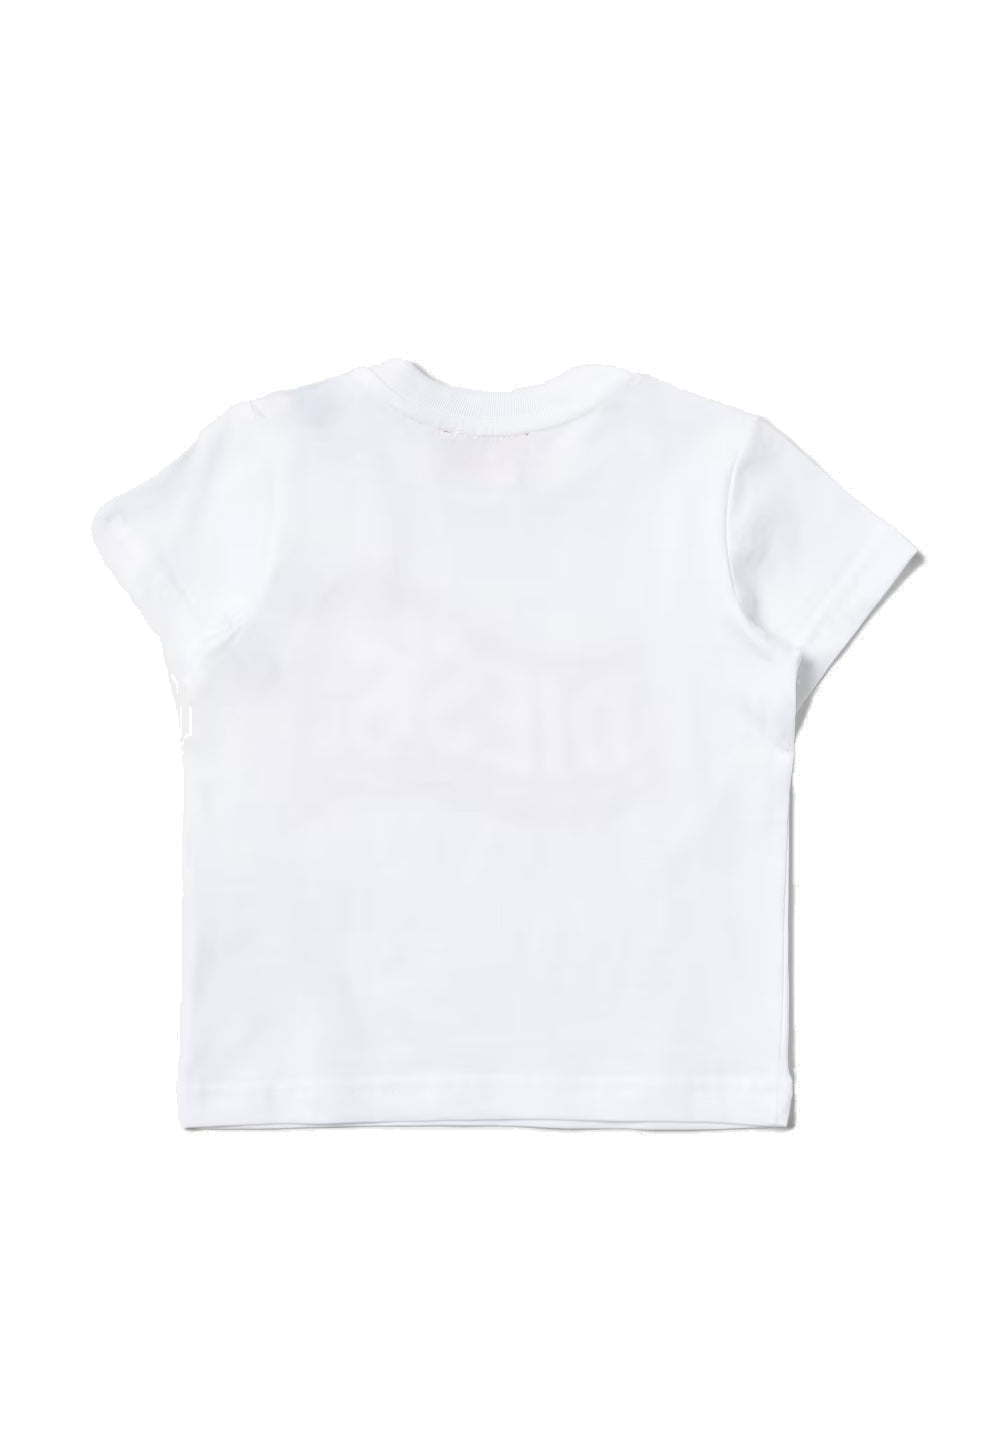 T-shirt bianca per bambino